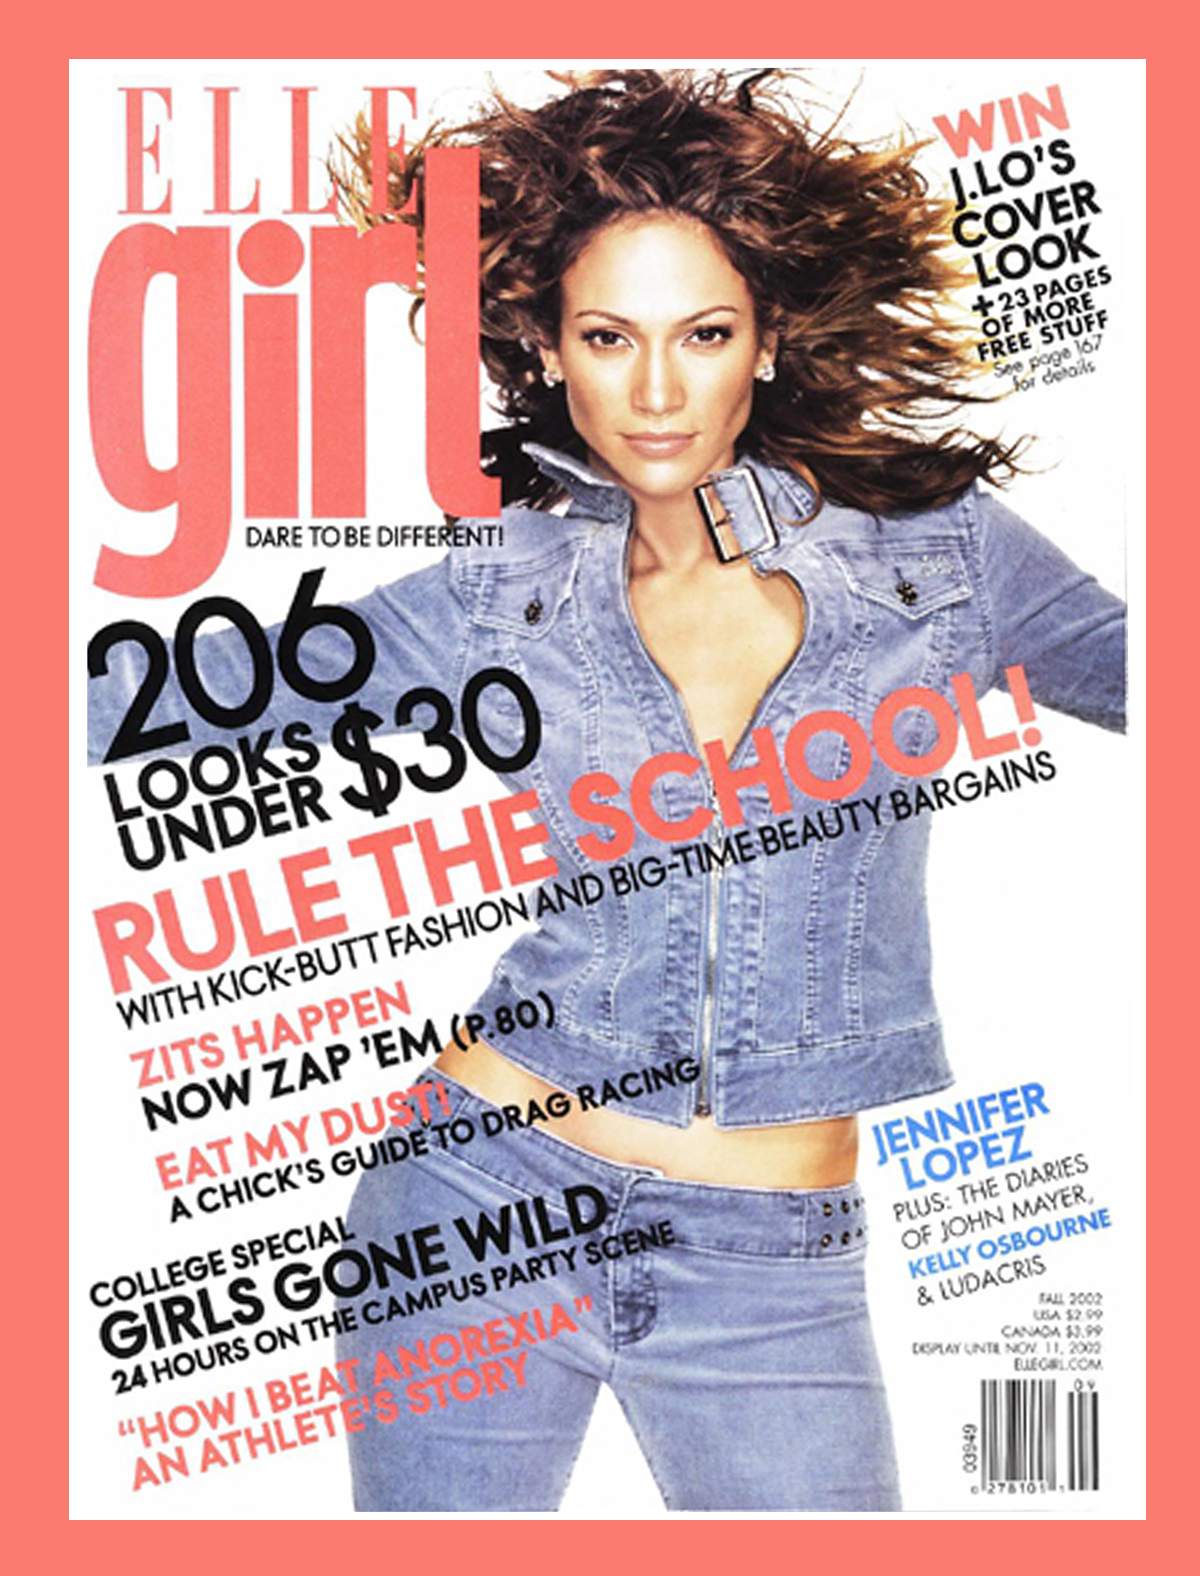 Elle Girl Cover - 2002, Jennifer Lopez